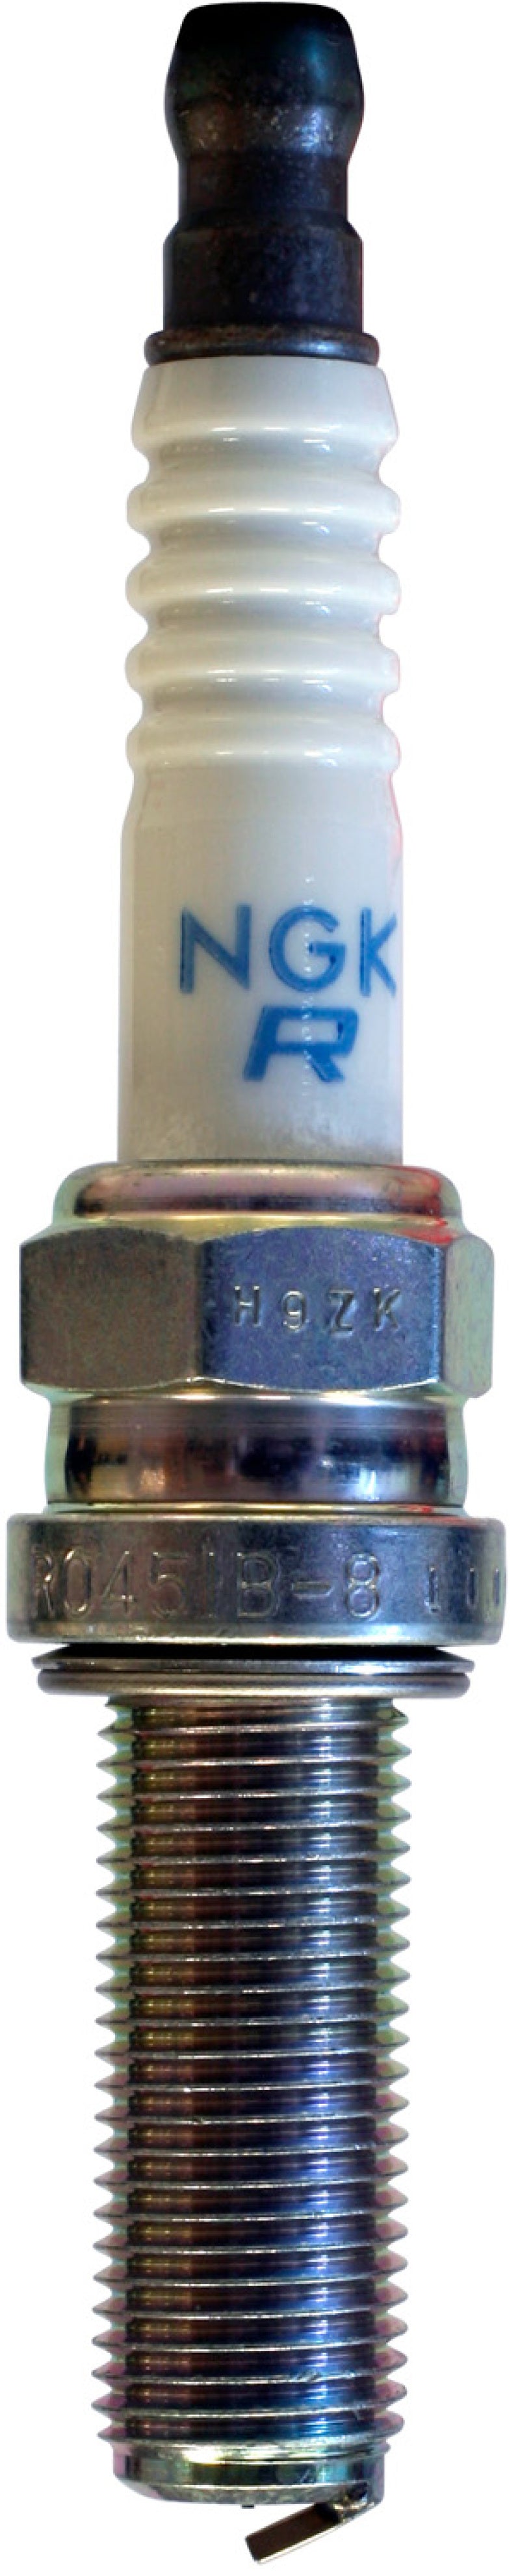 NGK Racing Spark Plug Box of 4 (R0451B-8)